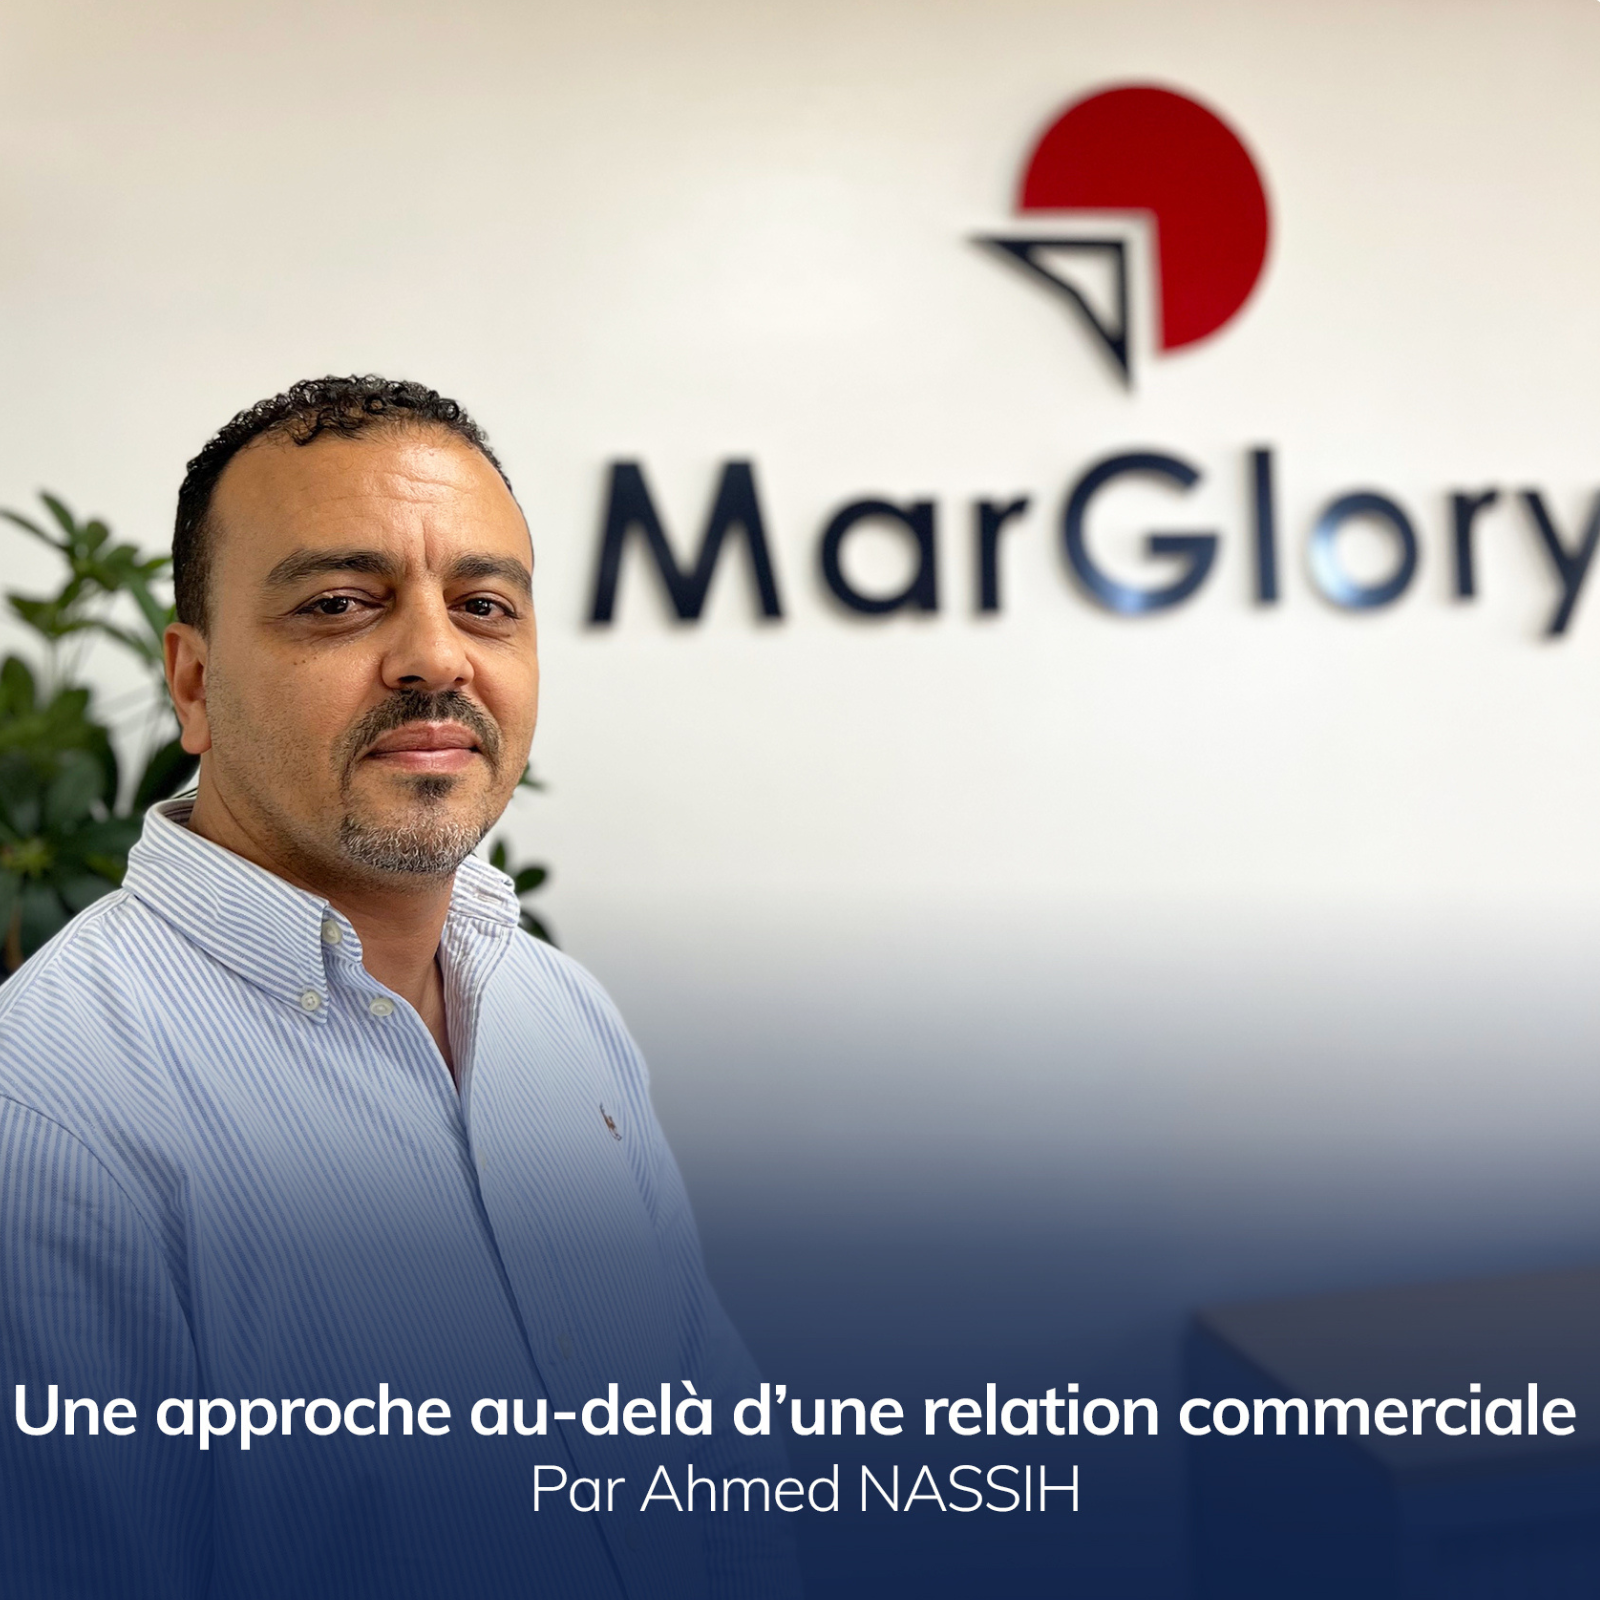 Ahmed Nassih -LCL Senior Field Sales- vous parle des liens entre Marglory et ses clients; une approche qui dépasse la simple relation commerciale.